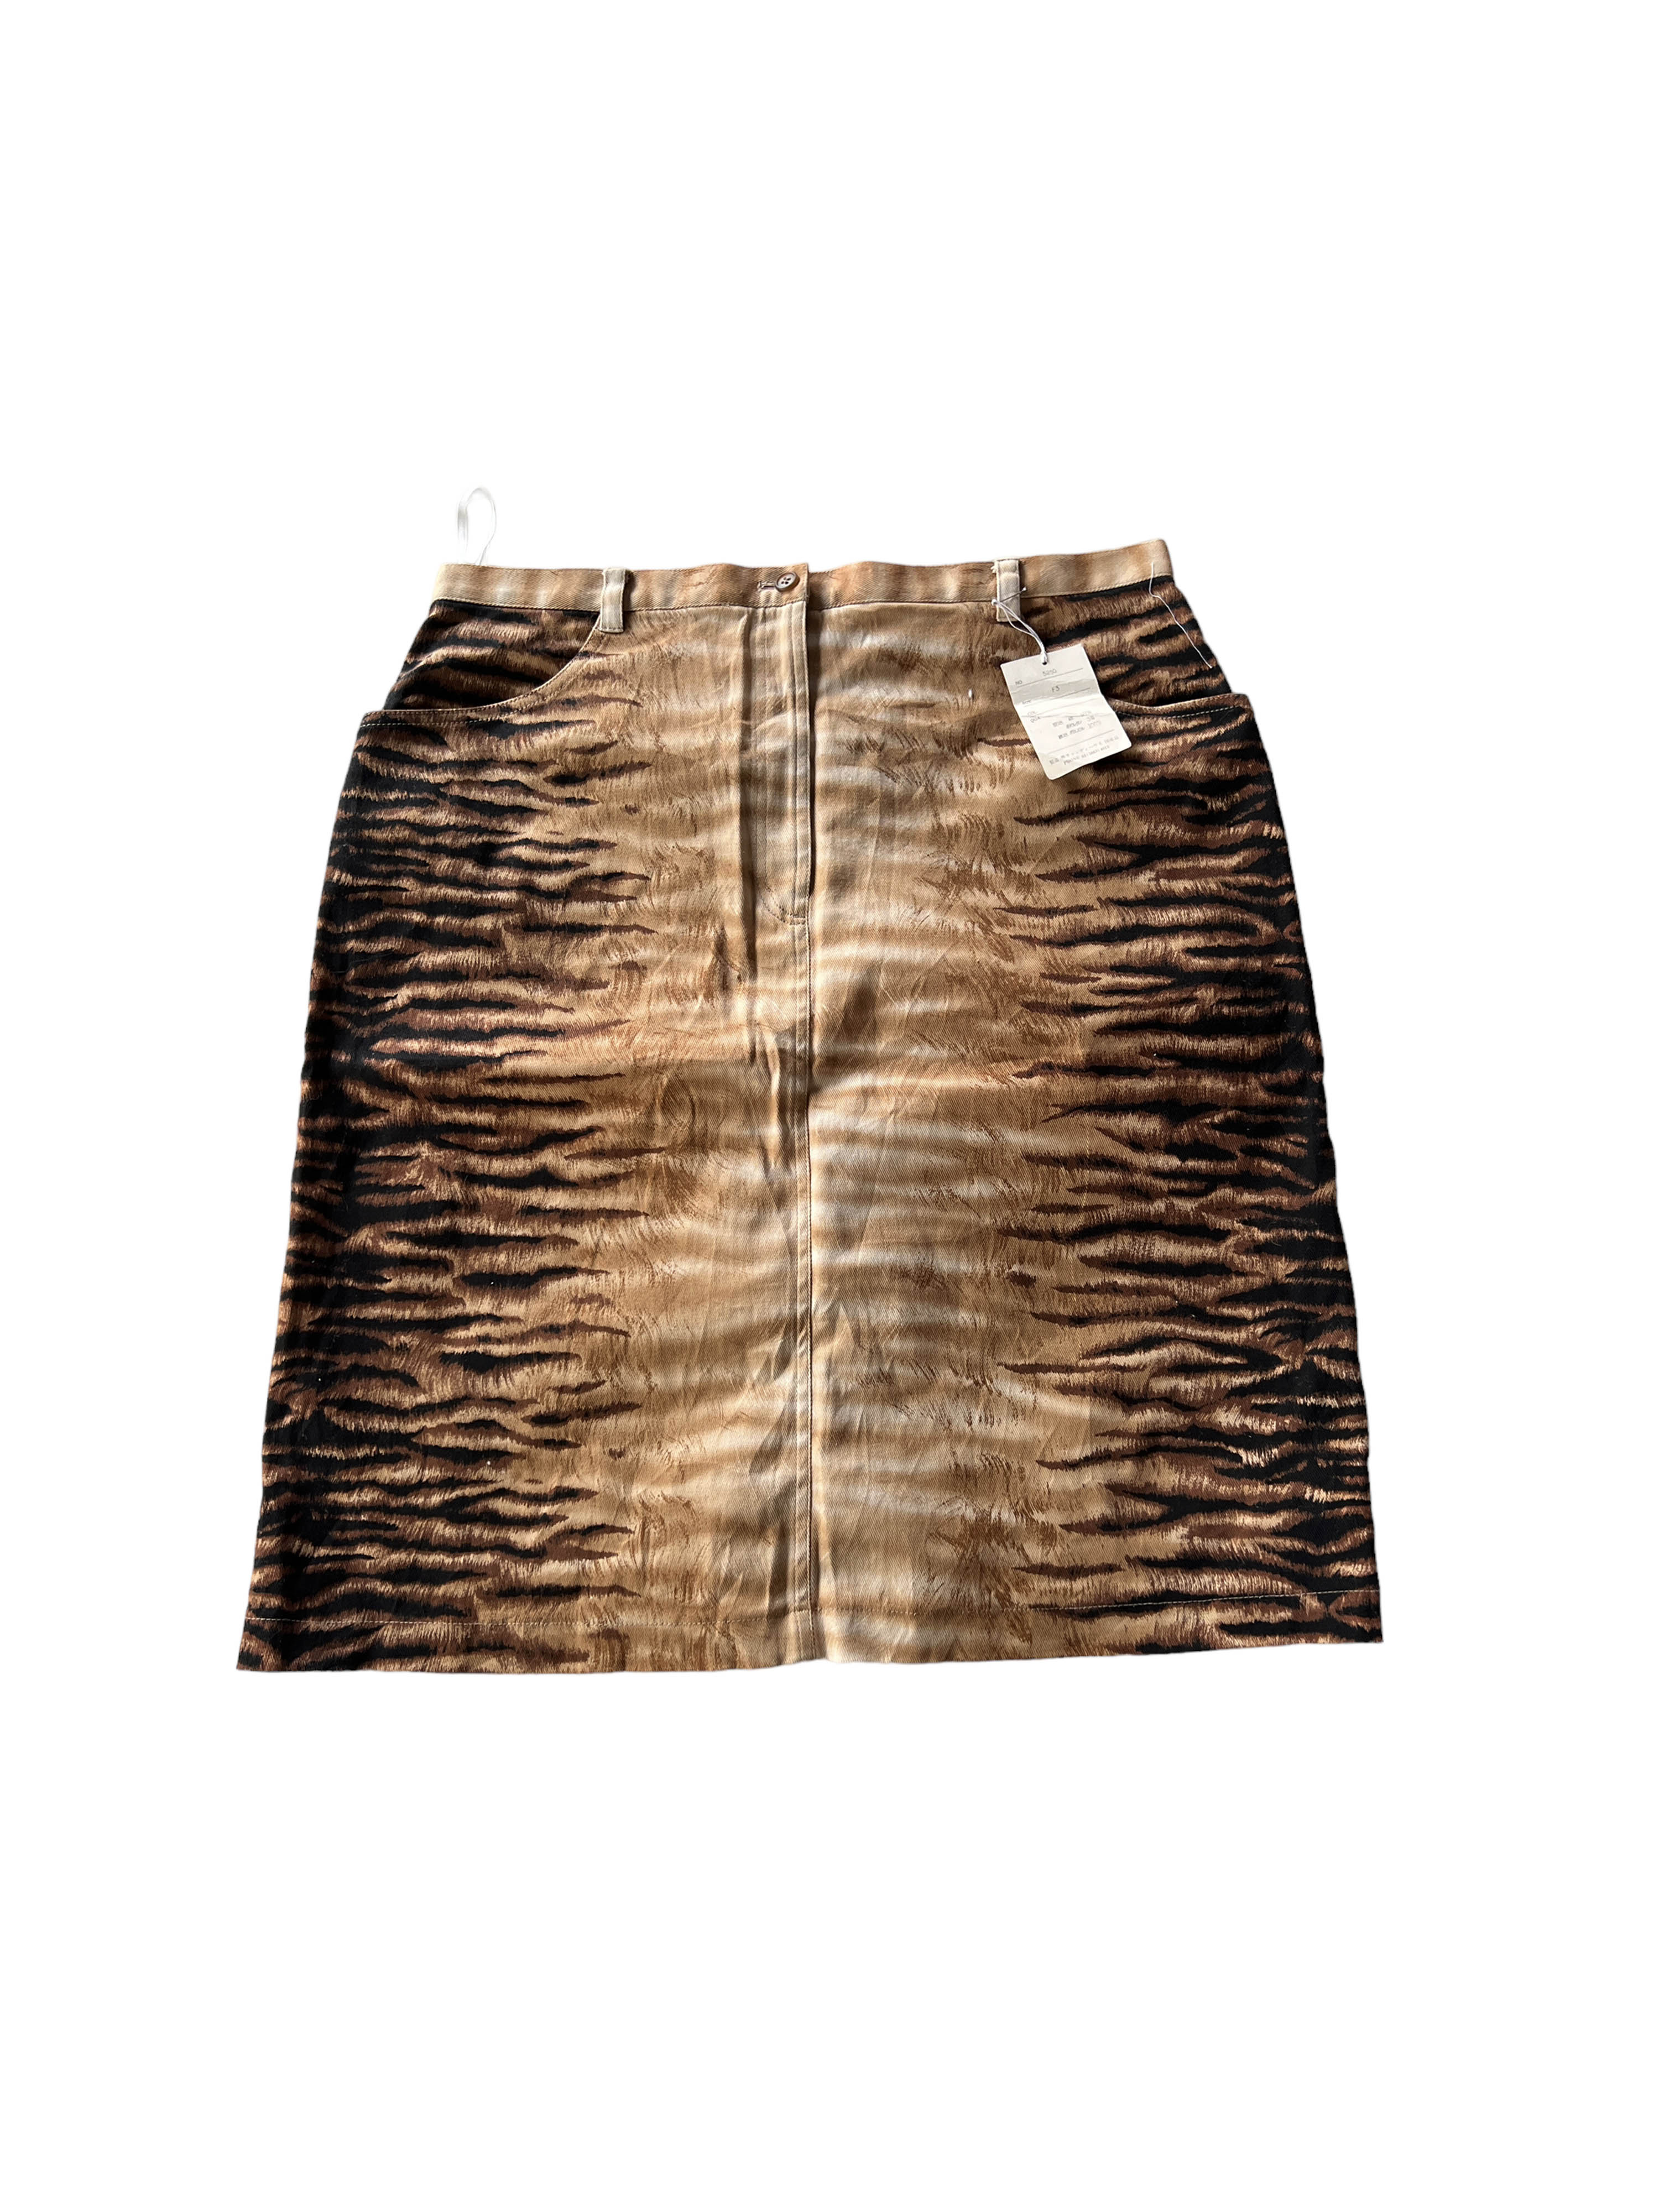 vintage tiger pattern skirts